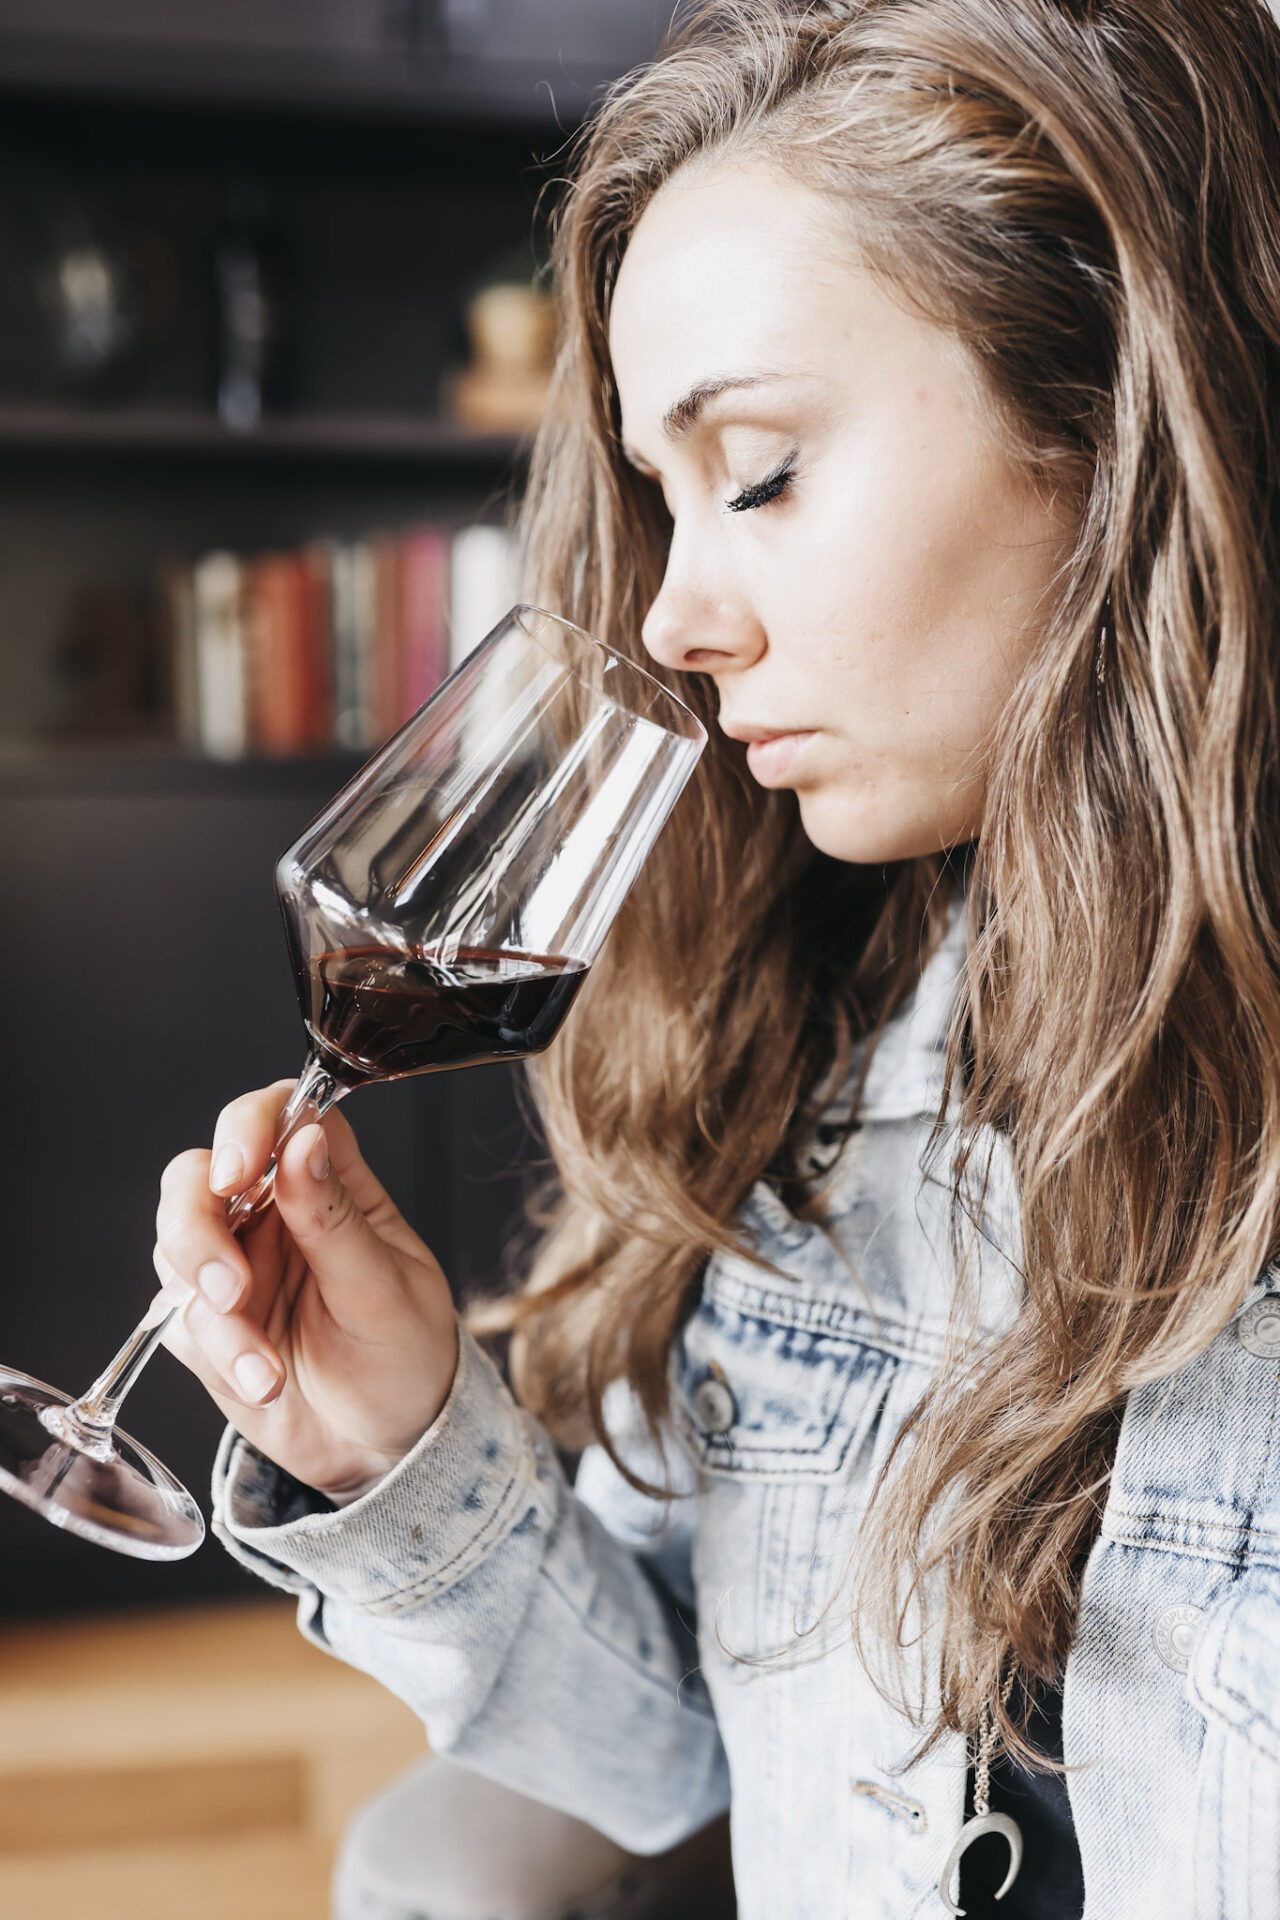 Non-Breakable Connoisseur Stem Wine Glasses